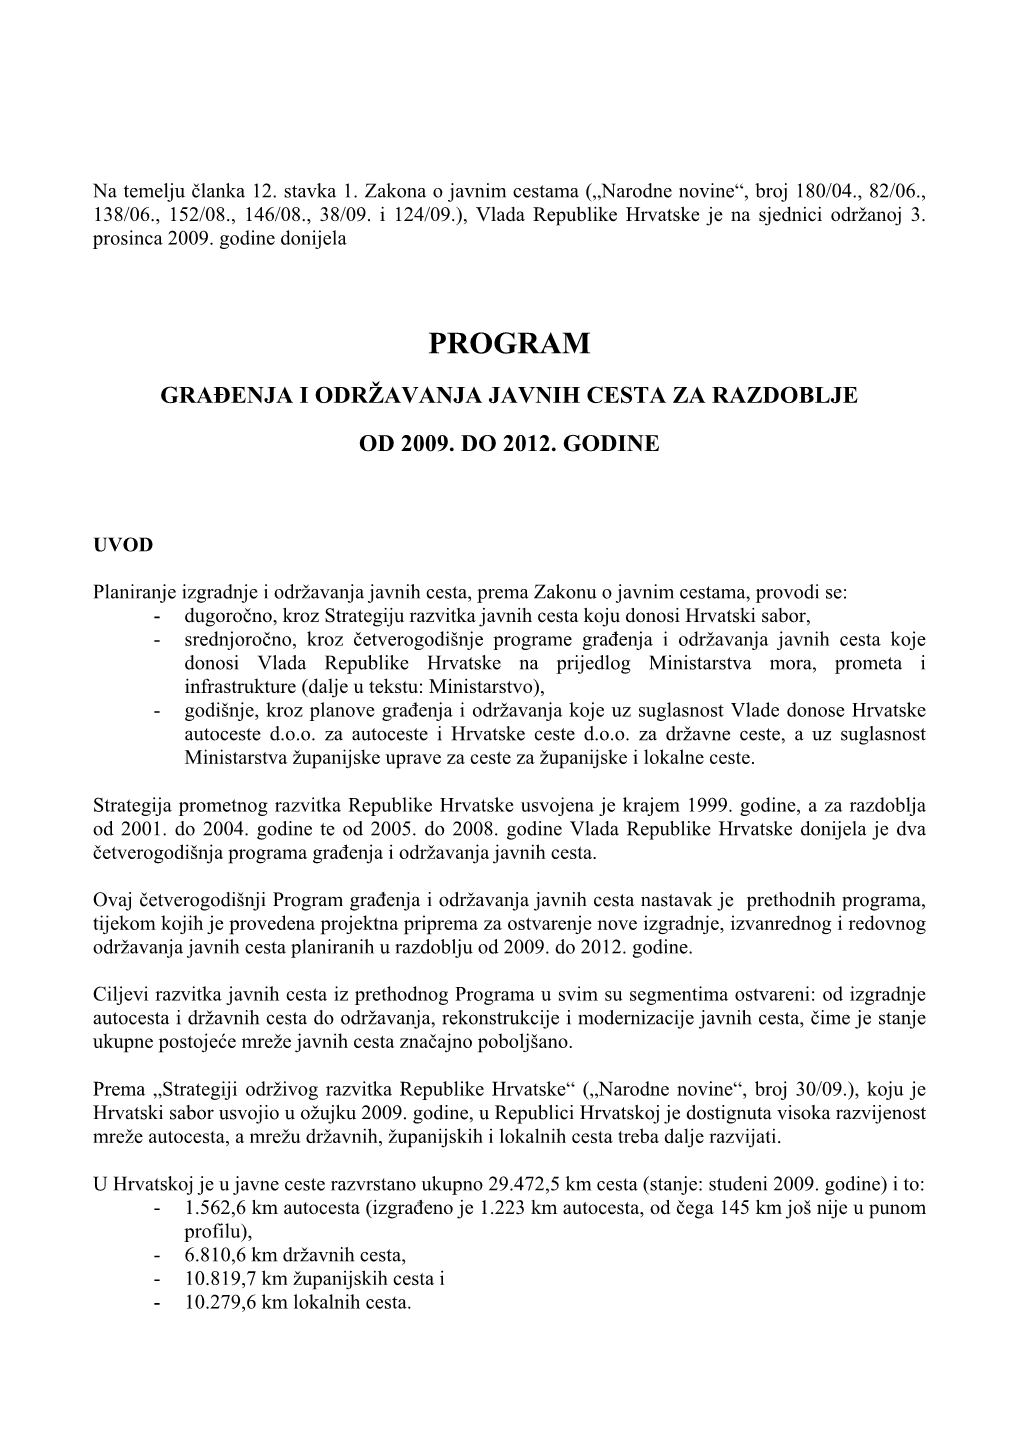 Program Građenja I Održavanja Javnih Cesta Za Razdoblje Od 2009.- 2012